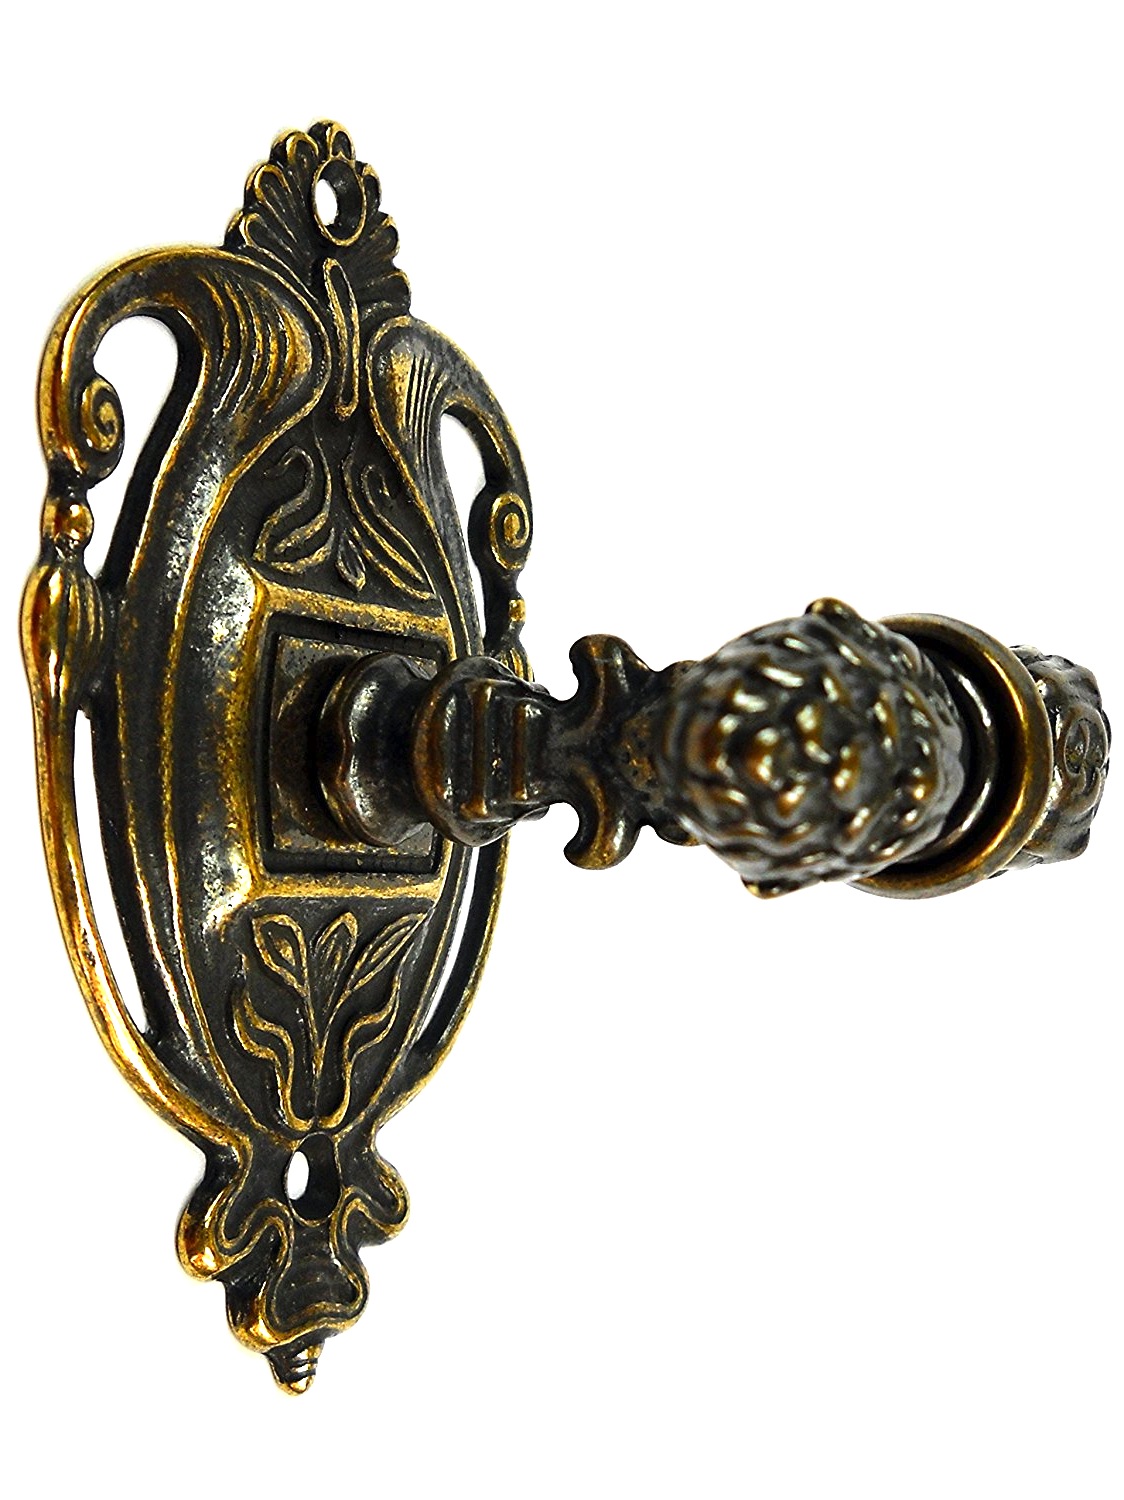 Porta accappatoio gancio appendino in ottone dorato stile barocco